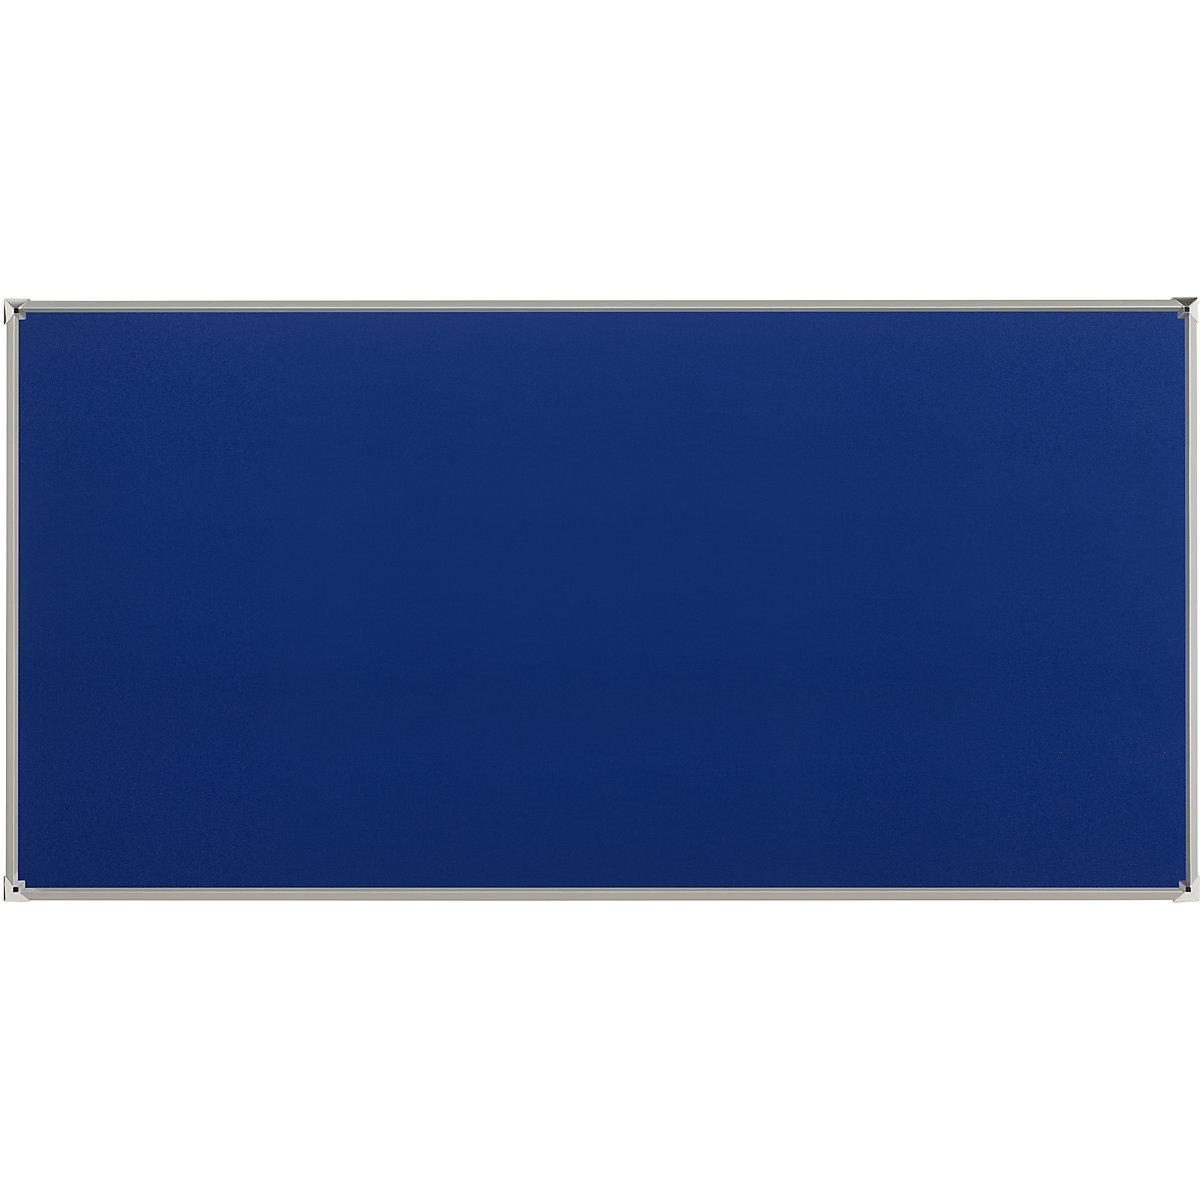 Oglasna ploča s aluminijskim okvirom – eurokraft pro, presvlaka od tkanine, u plavoj boji, ŠxV 2400 x 1200 mm-6